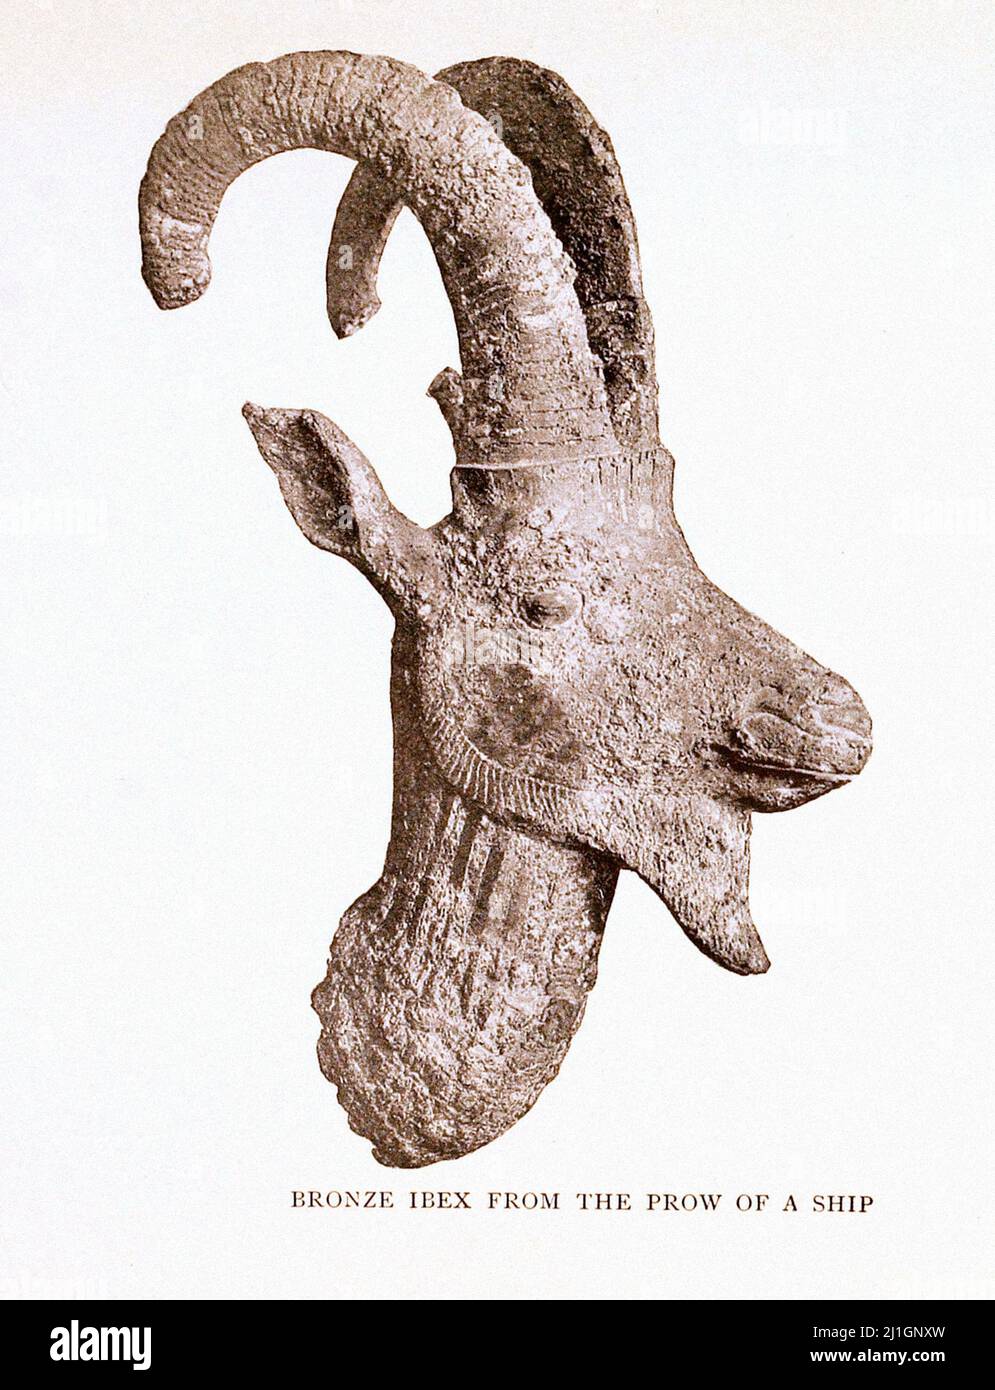 Égypte ancienne. Période tardive de l'Égypte ancienne, dynastie Saite (26th dynastie). Illustration de 1912 Bronze Ibex de la prow d'un navire Banque D'Images